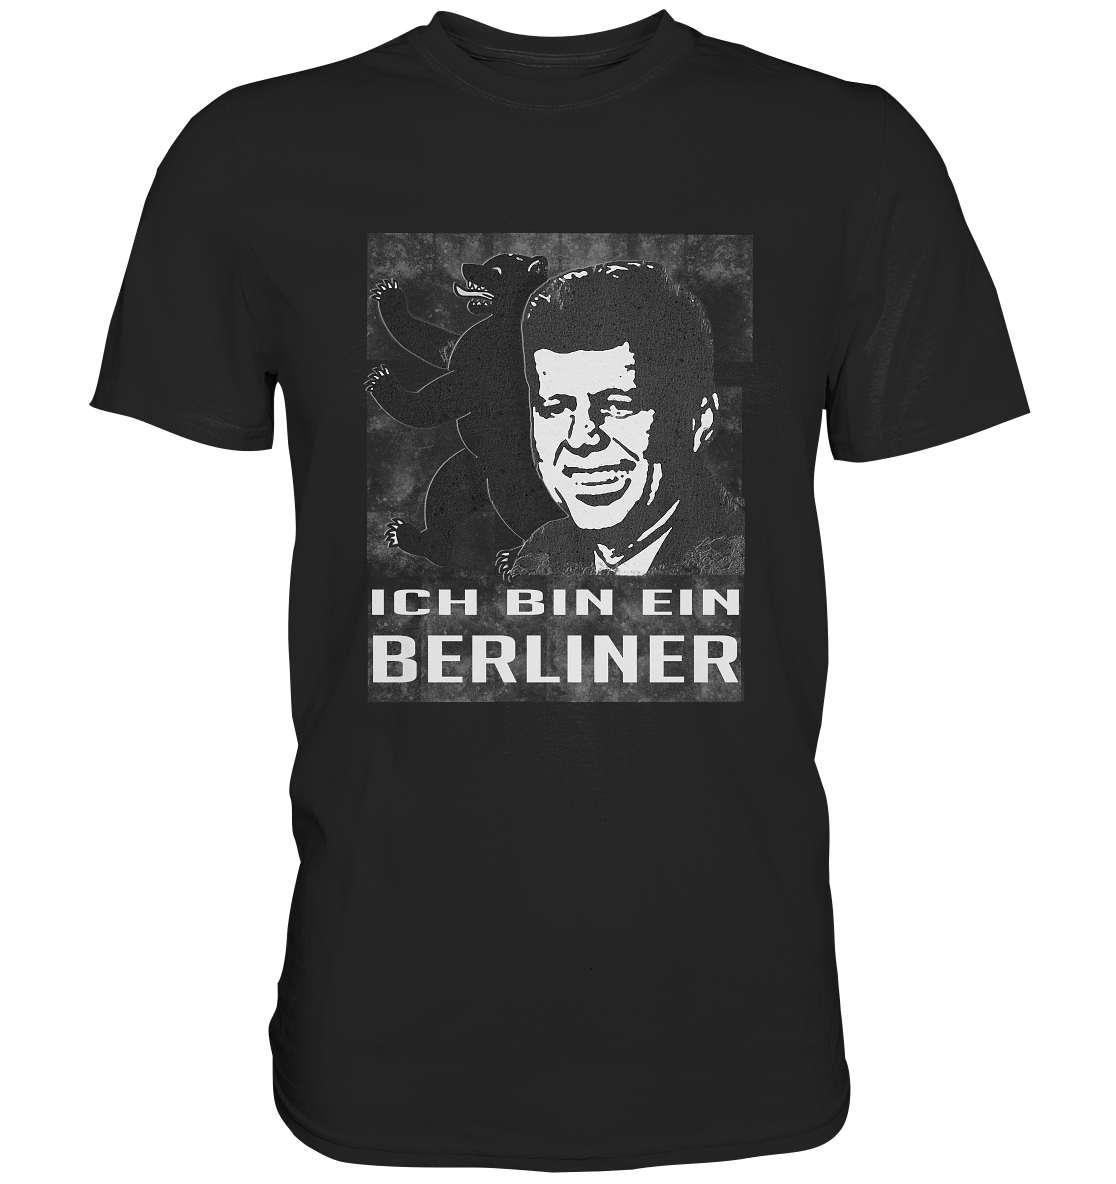 Ich bin ein Berliner. Kennedy mit Berliner Bär - Premium Shirt